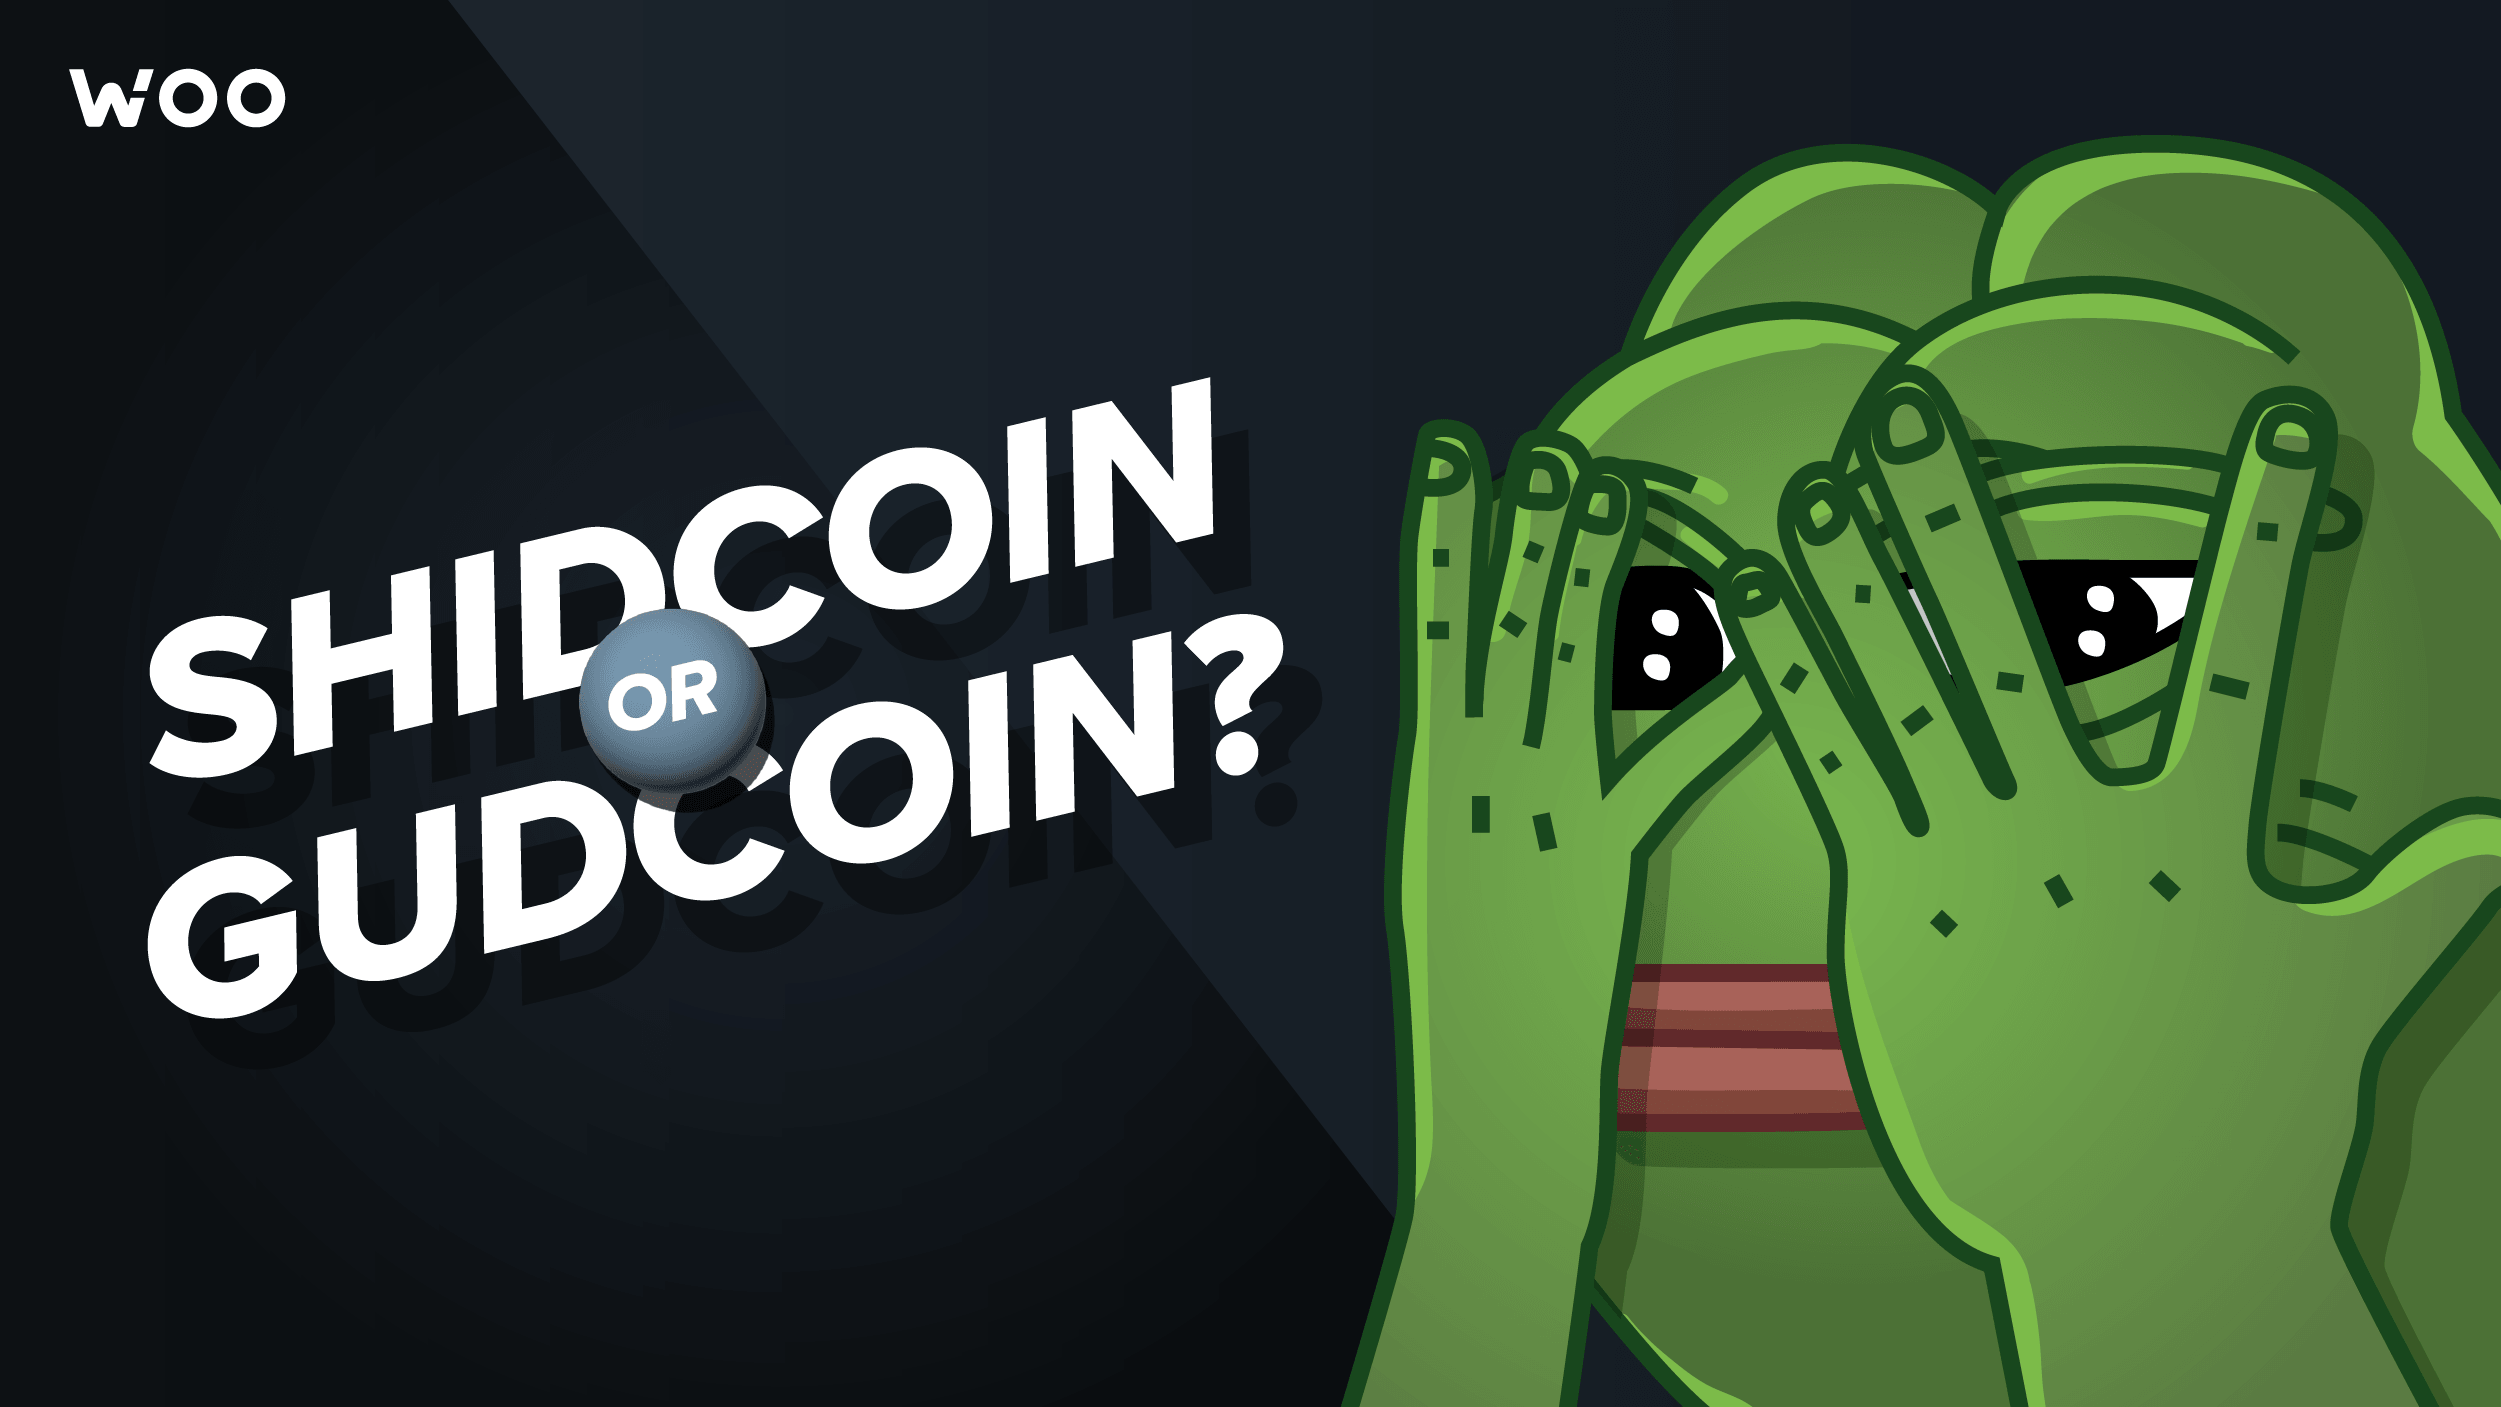 Celestia: Shidcoin or gudcoin?